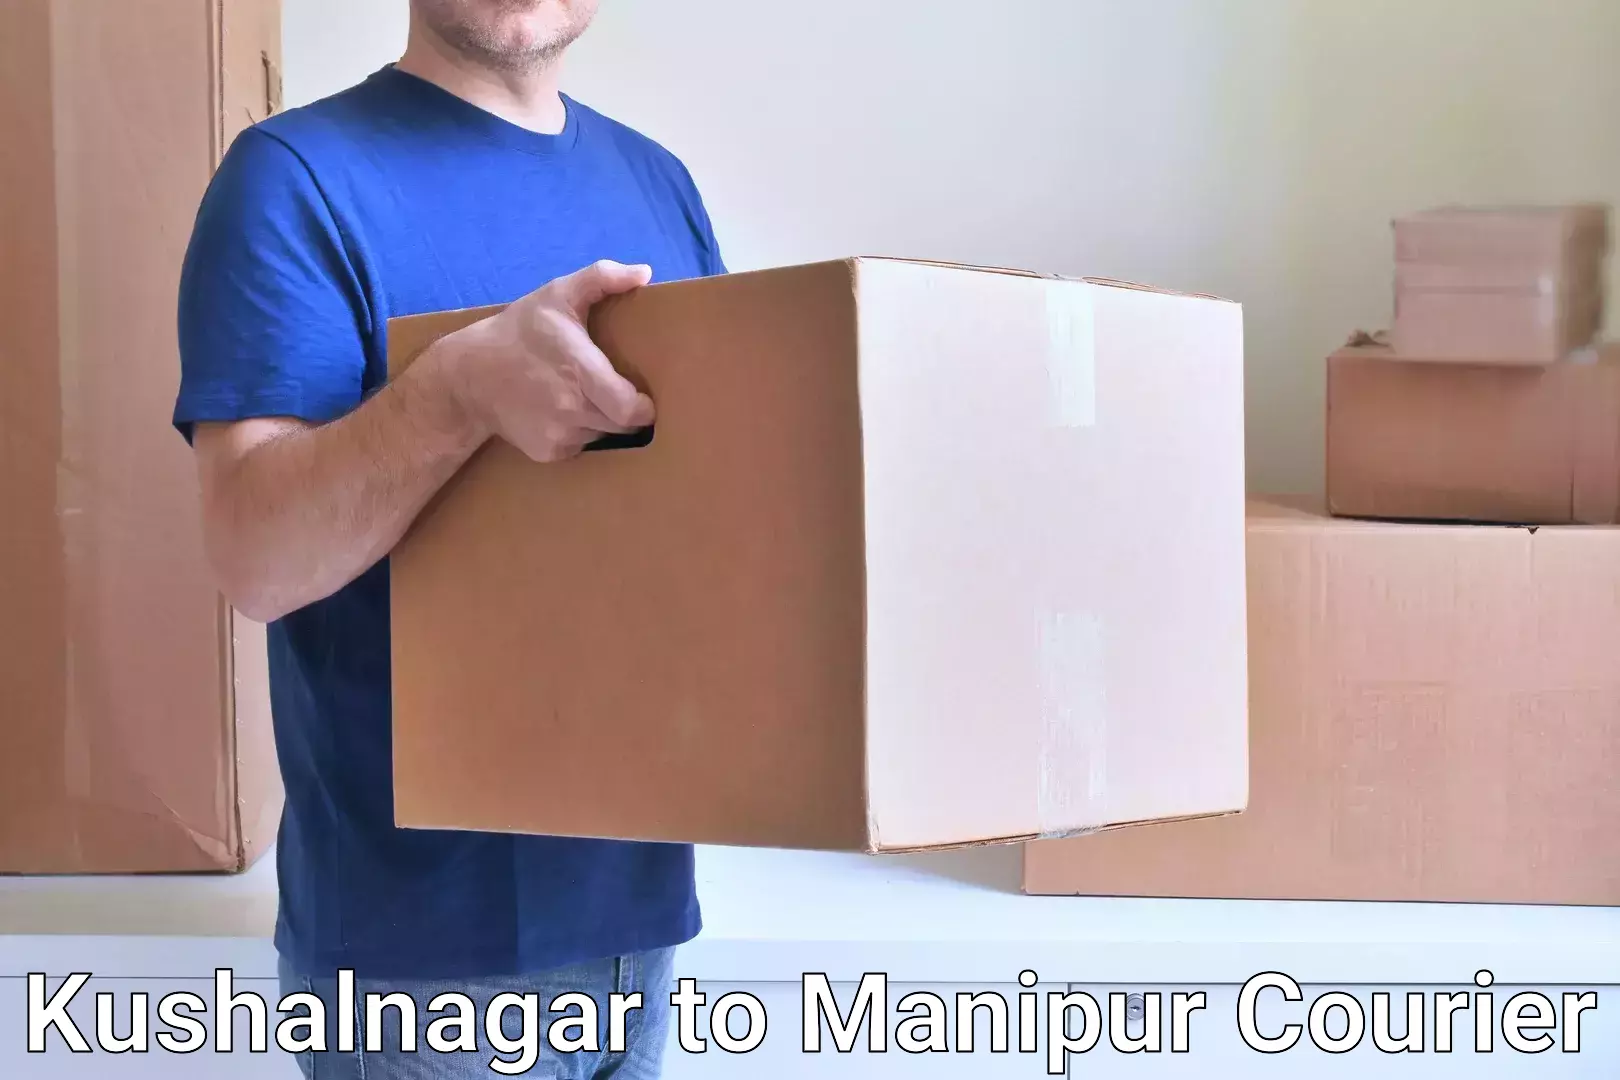 High-capacity shipping options Kushalnagar to Moirang